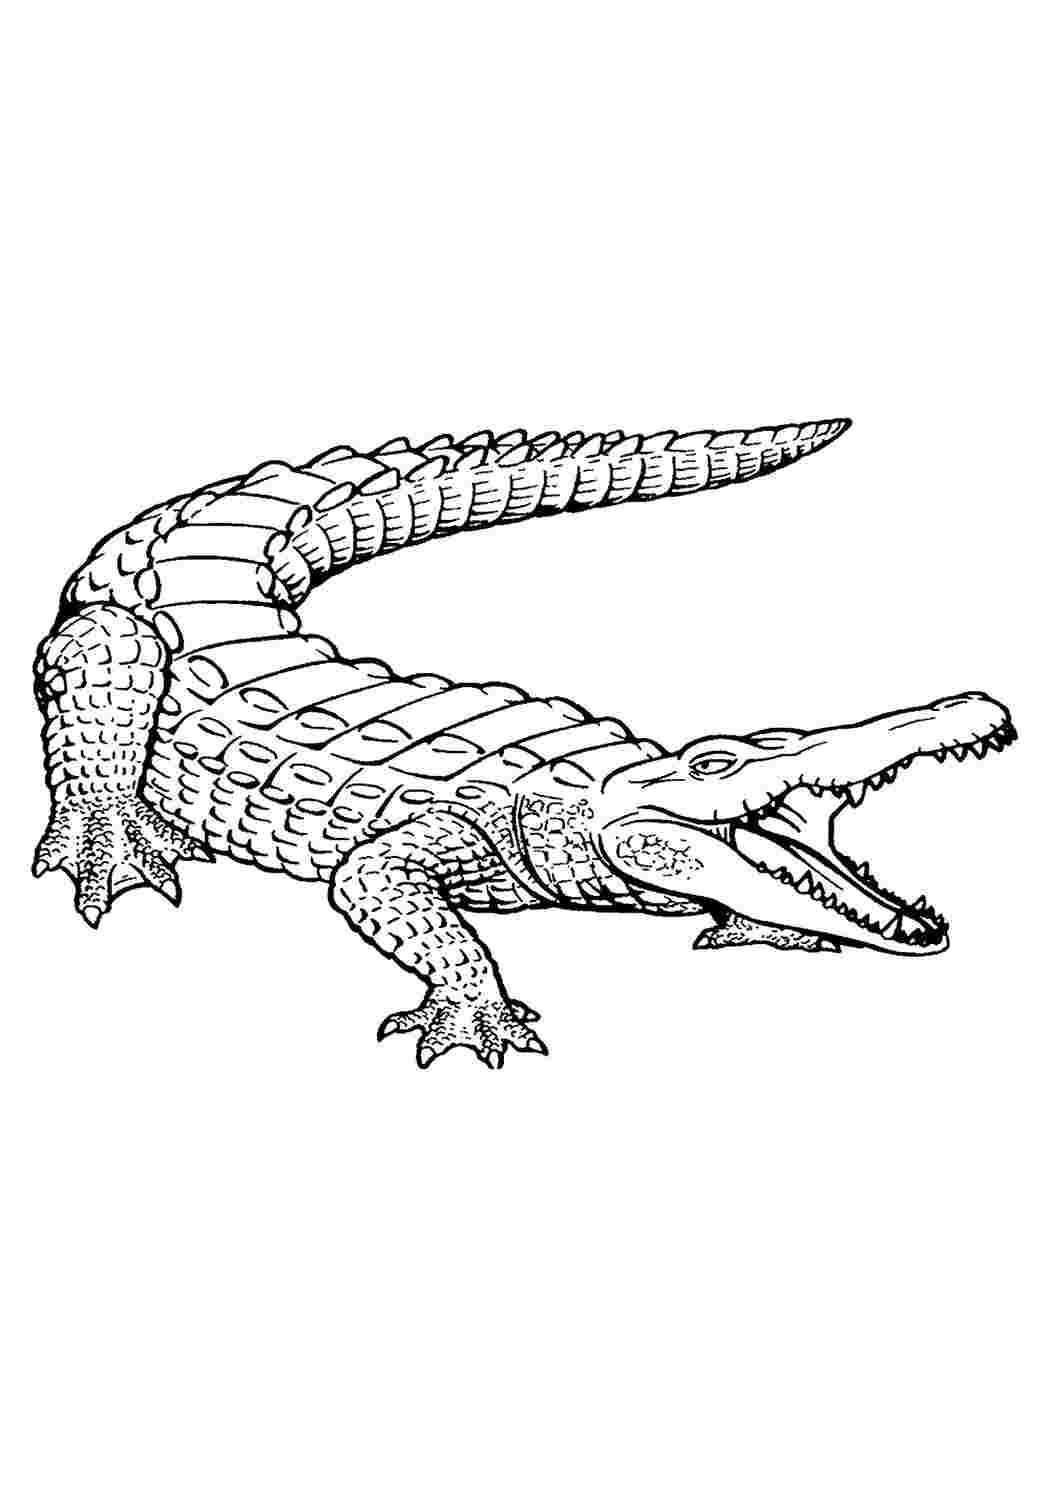 Раскраска крокодиловый сцинк для детей